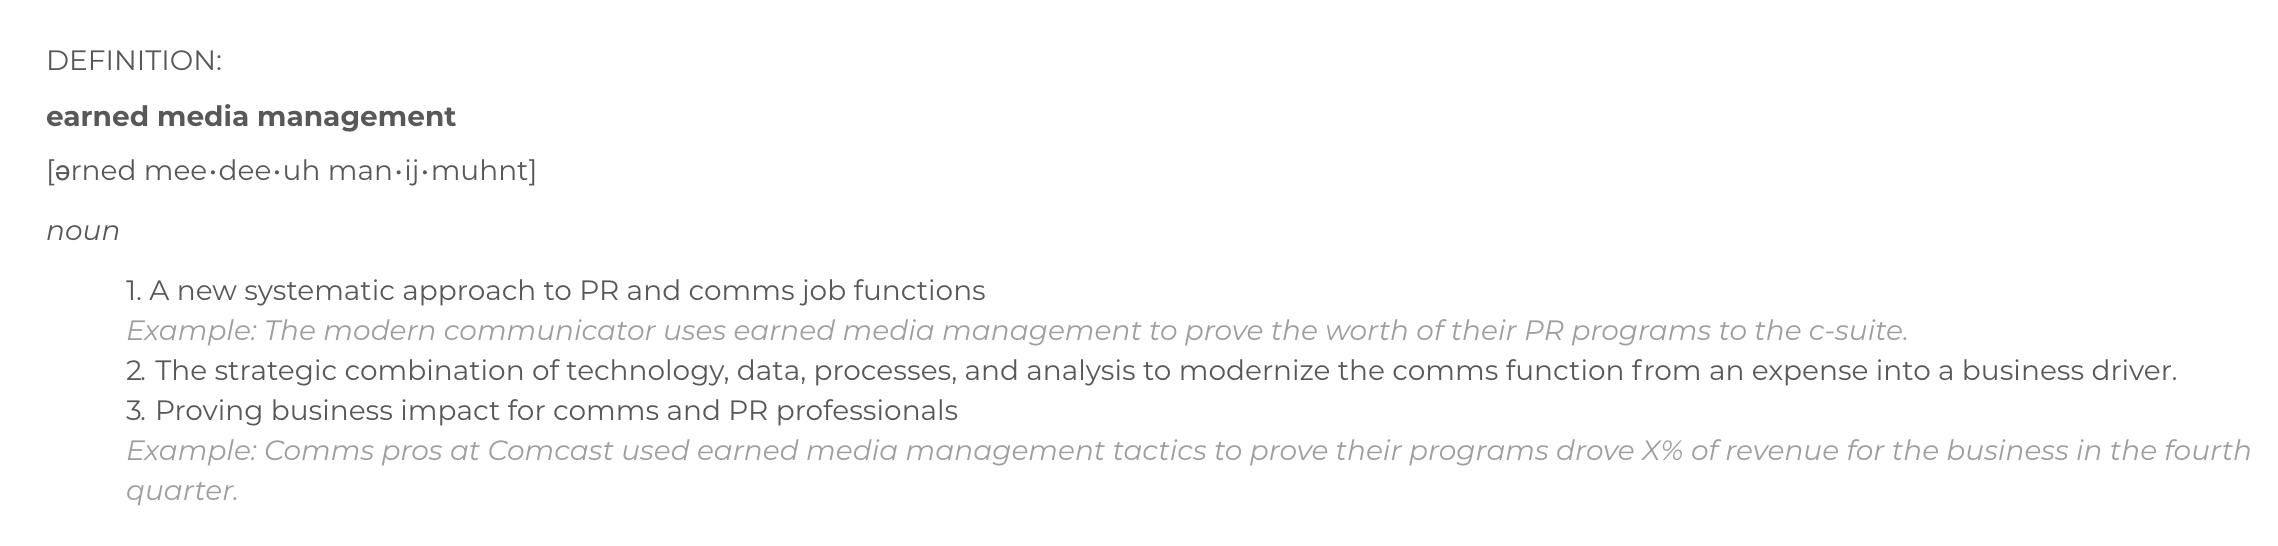 Earned Media Management Definition